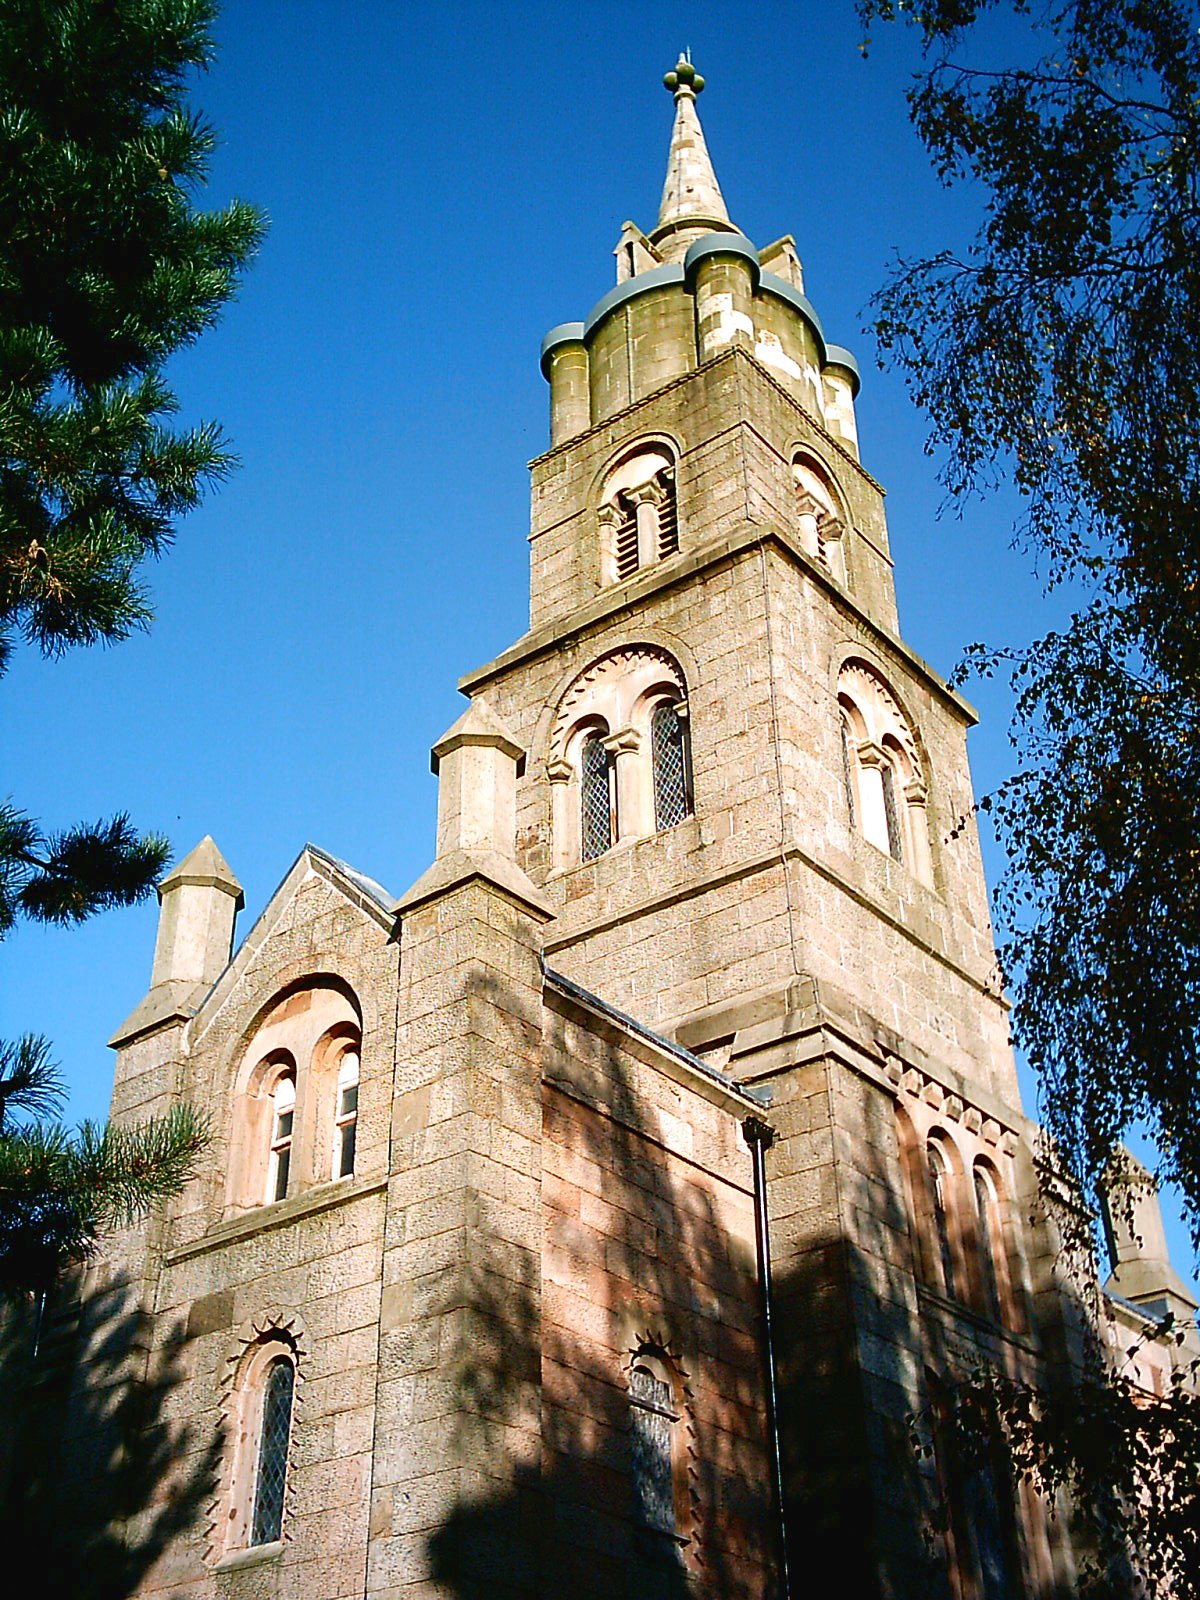 St Mary's Church, Preston